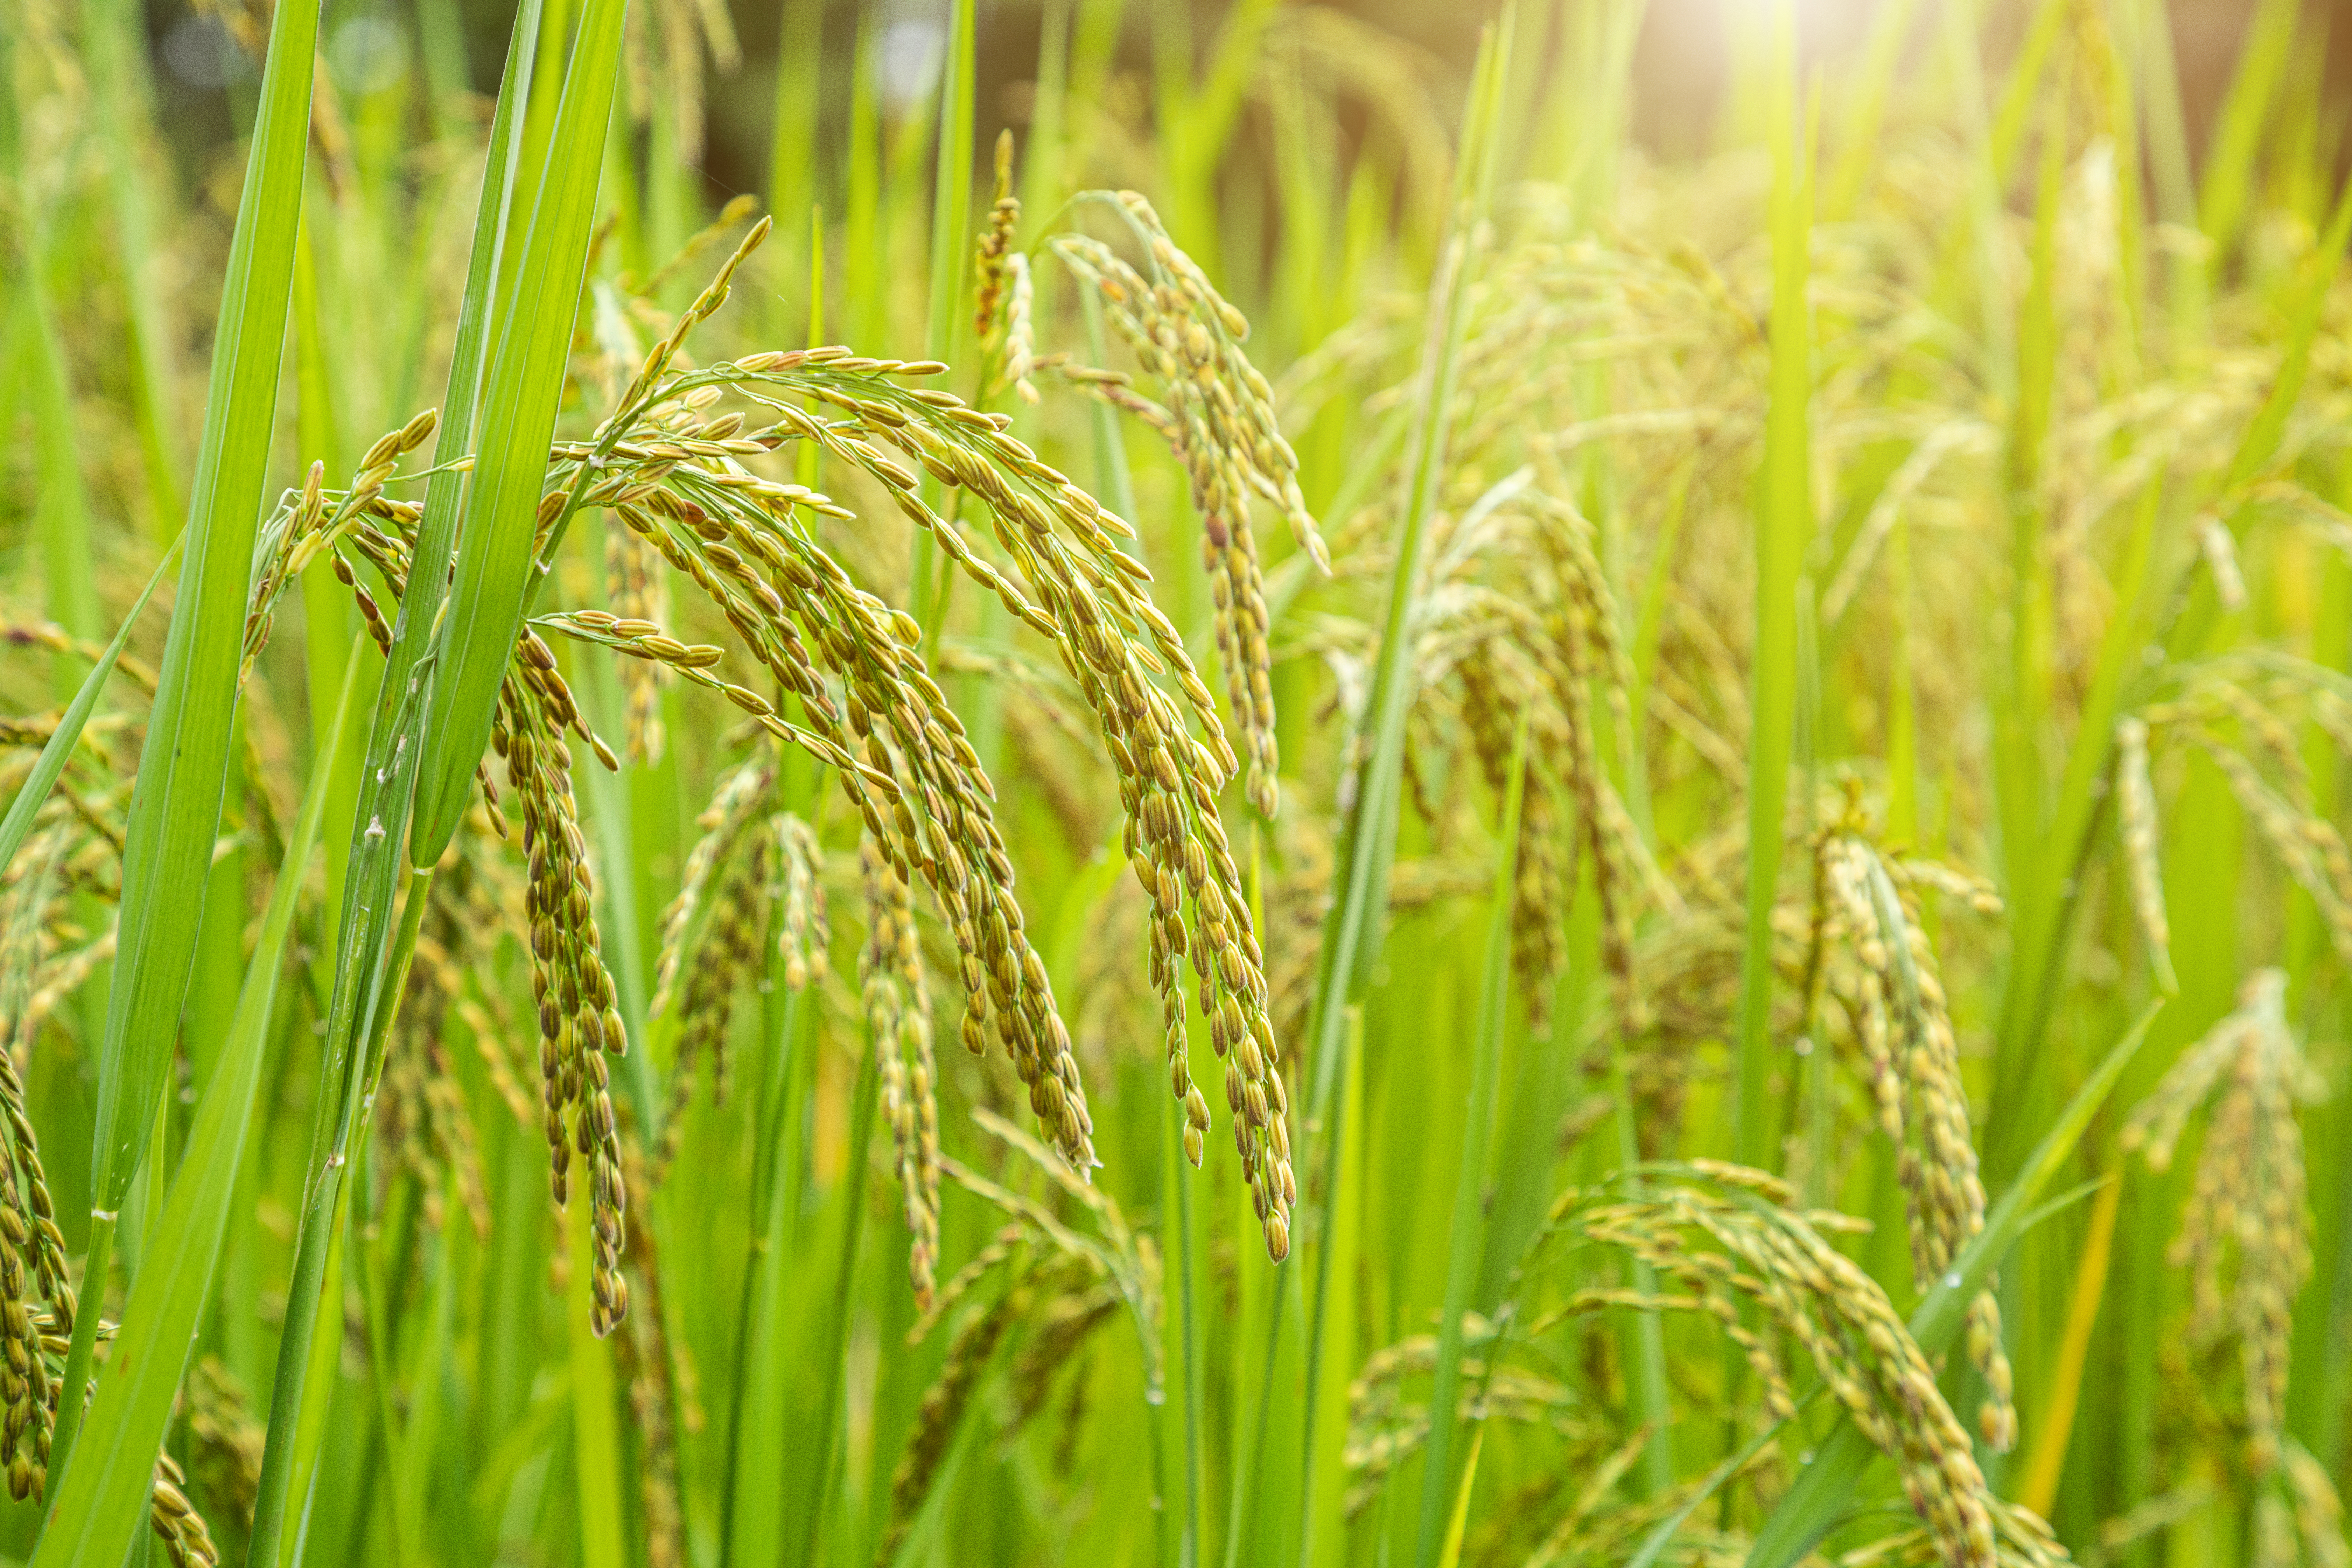 Lúa là loài ưu thế trong quần xã ruộng lúa